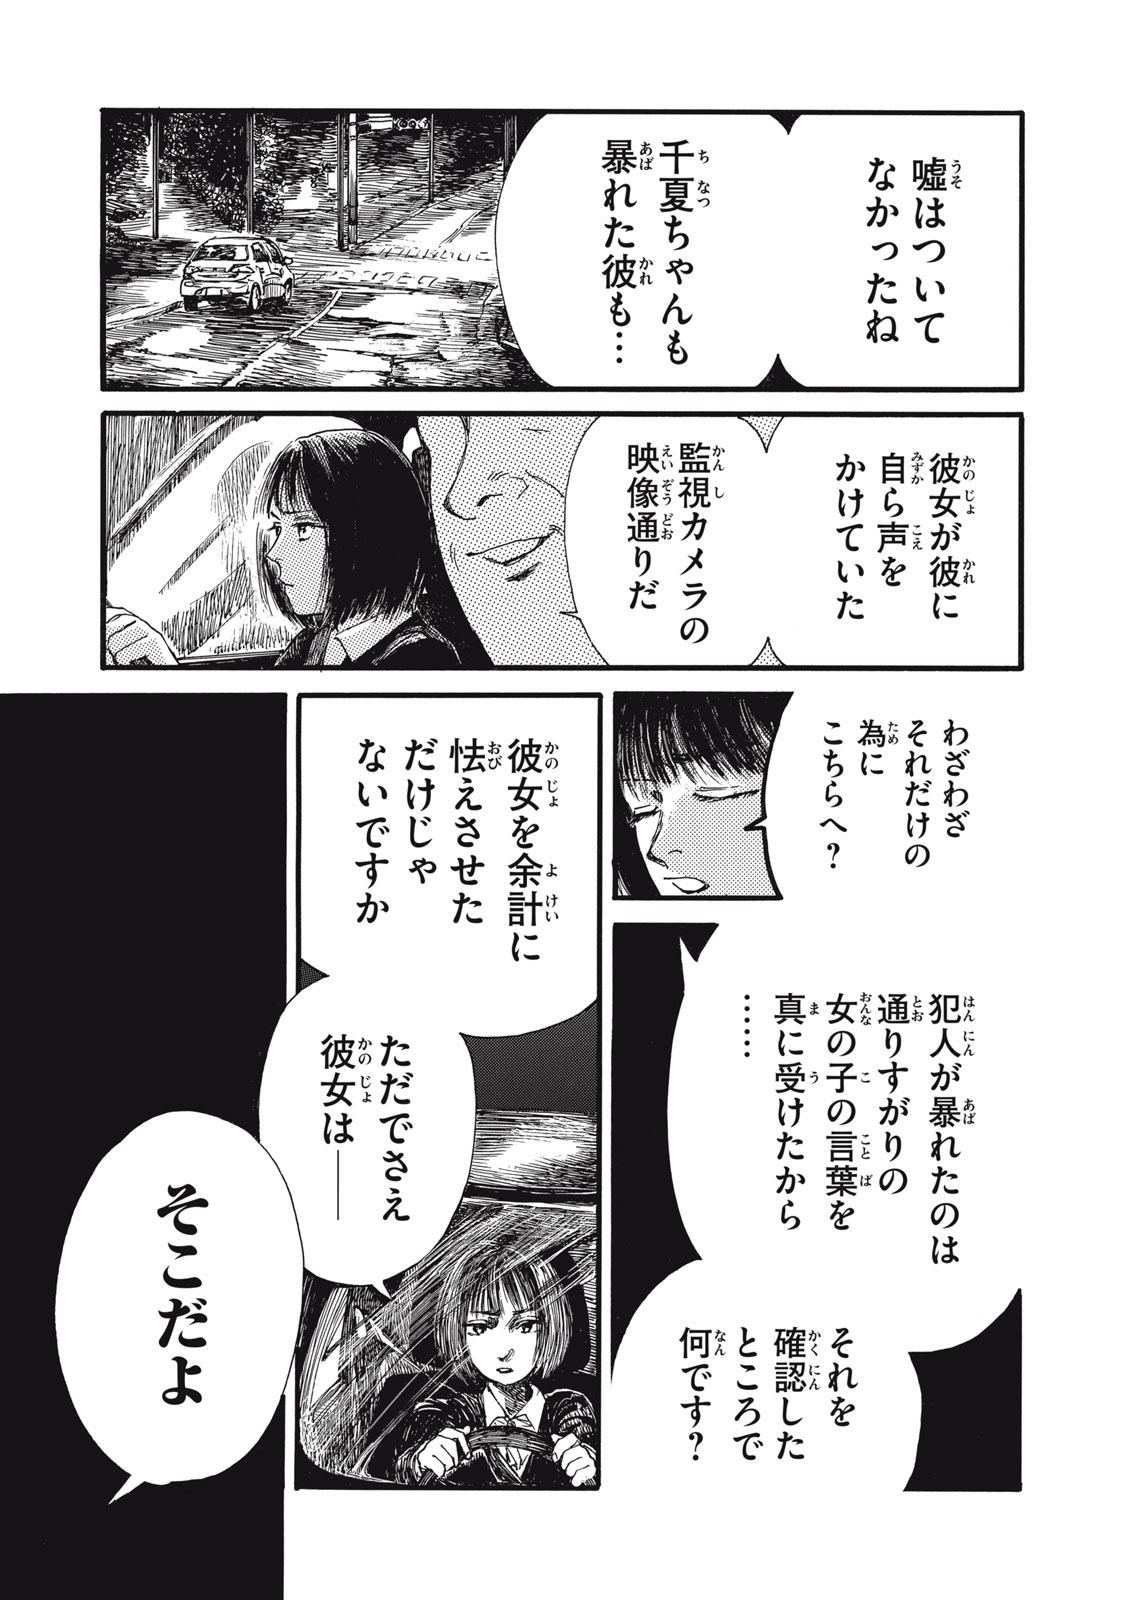 Watashi no Hara no Naka no Bakemono - Chapter 38 - Page 12